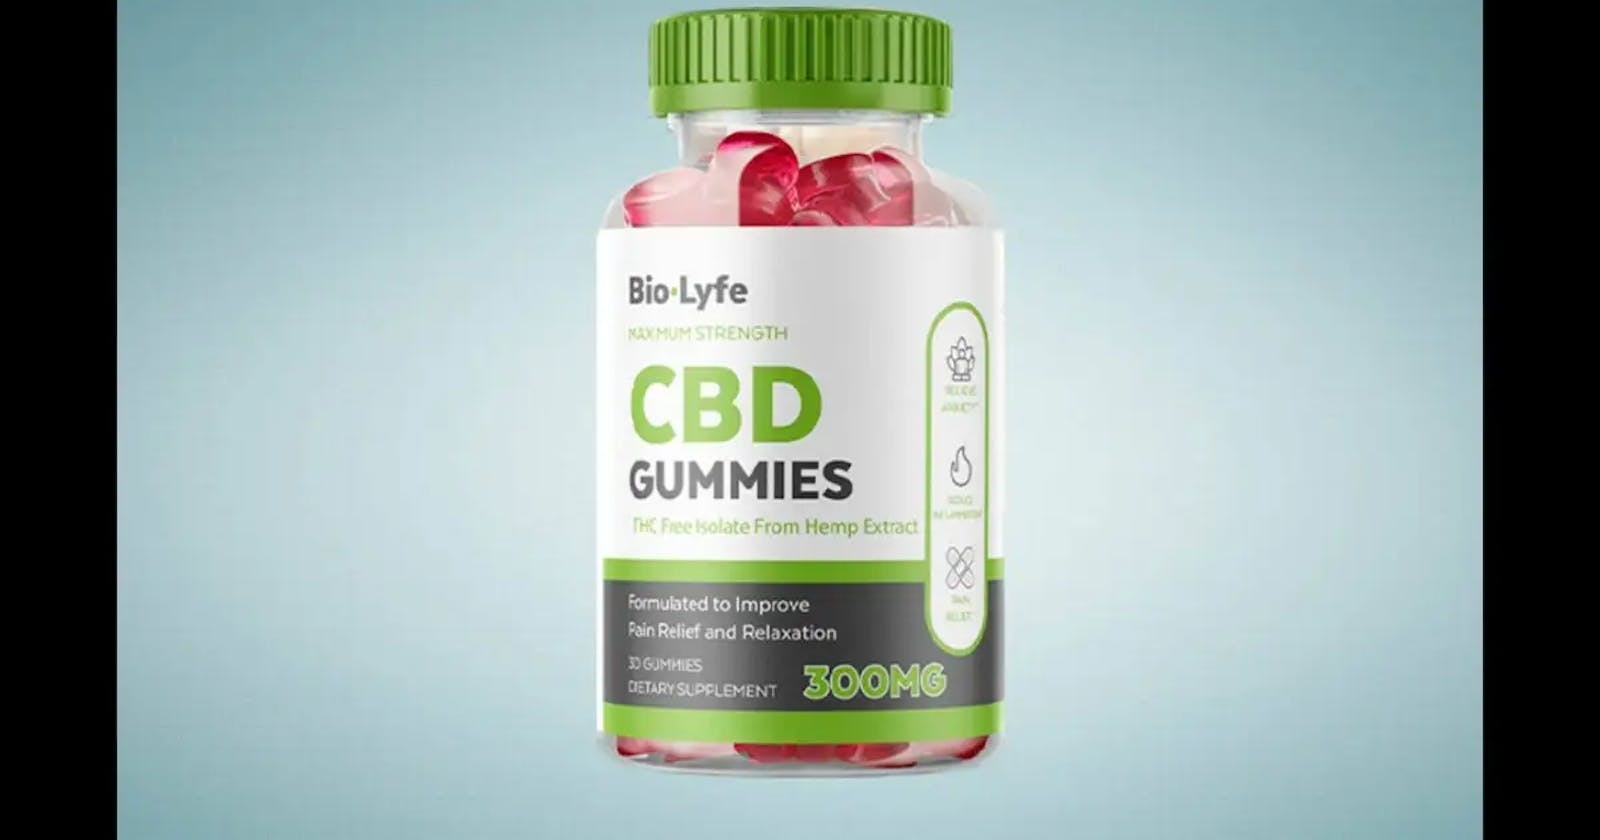 Biolyfe CBD Gummies (Cannabis Formula) Support Healthy Lifestyle!